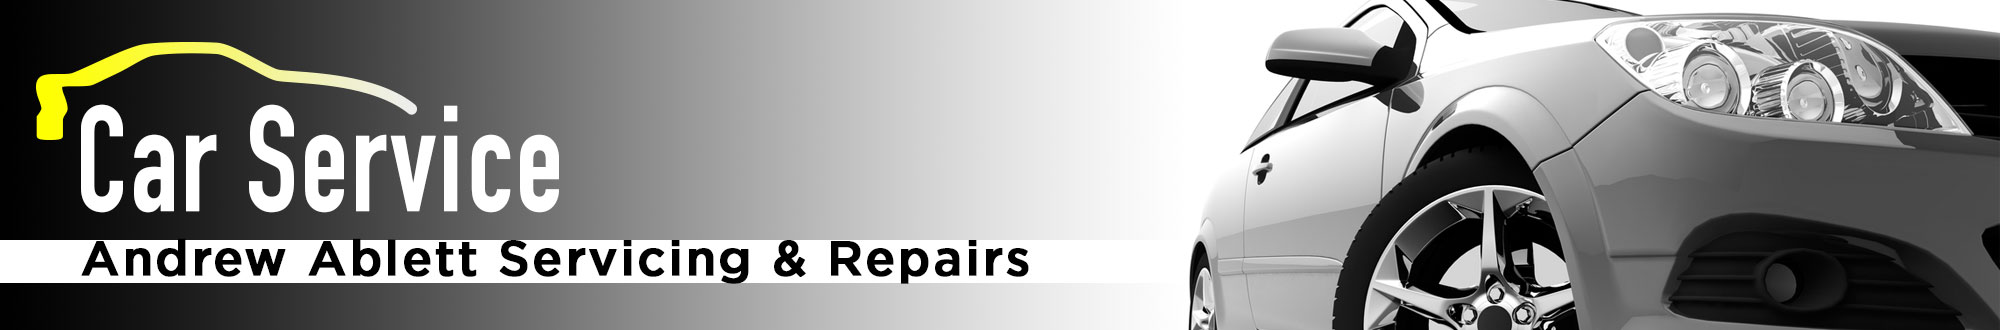 Car Servicing and Repairs